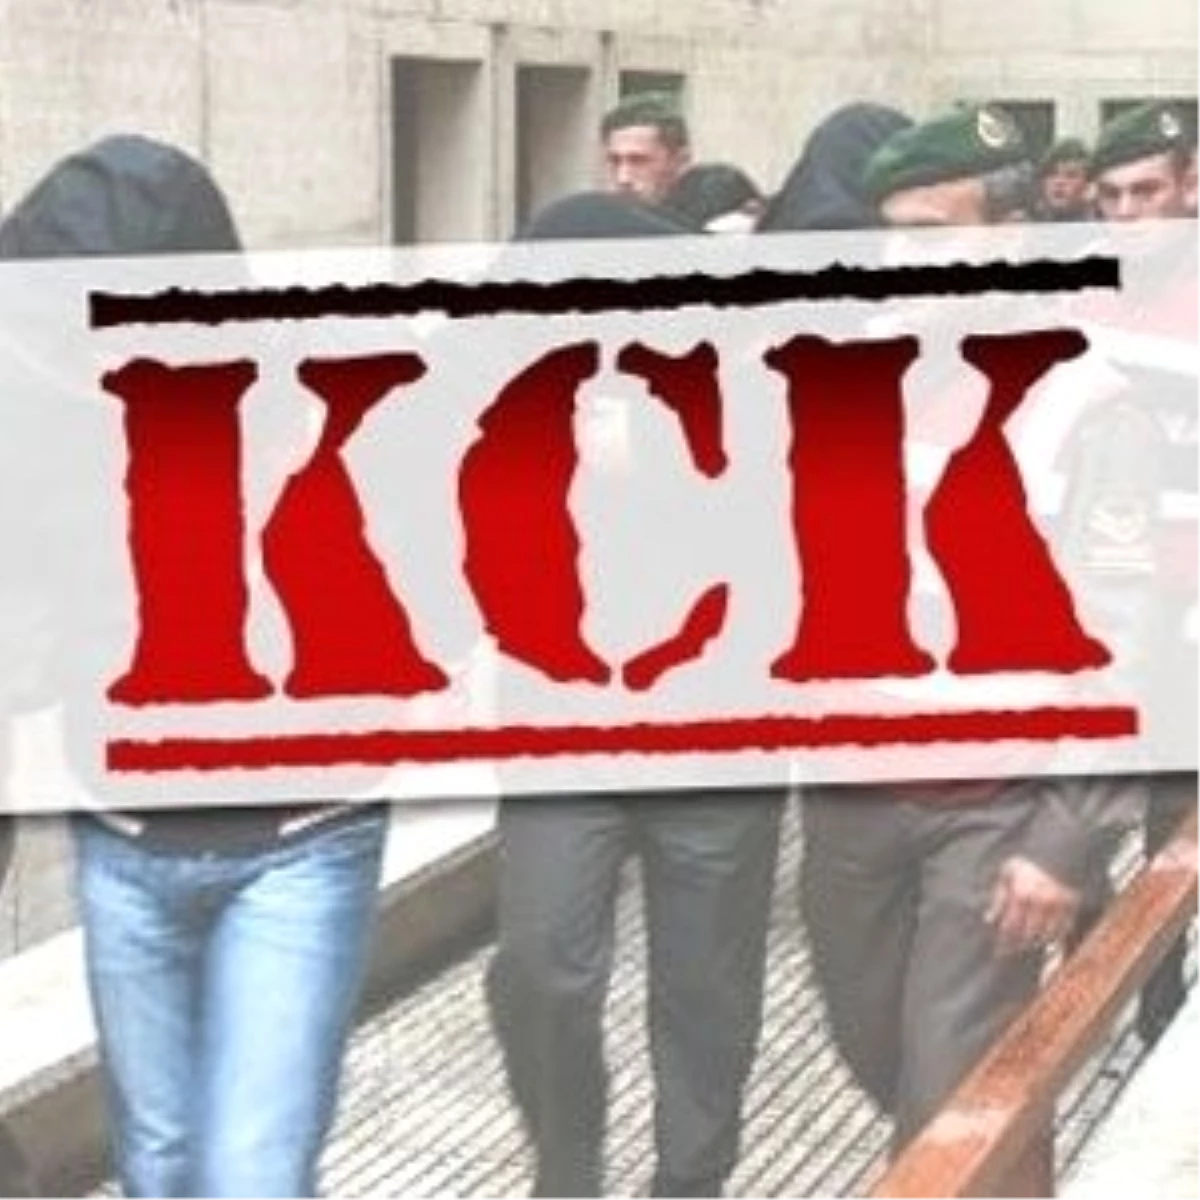 "Kck" Soruşturmasında 6 Kişi Tutuklandı